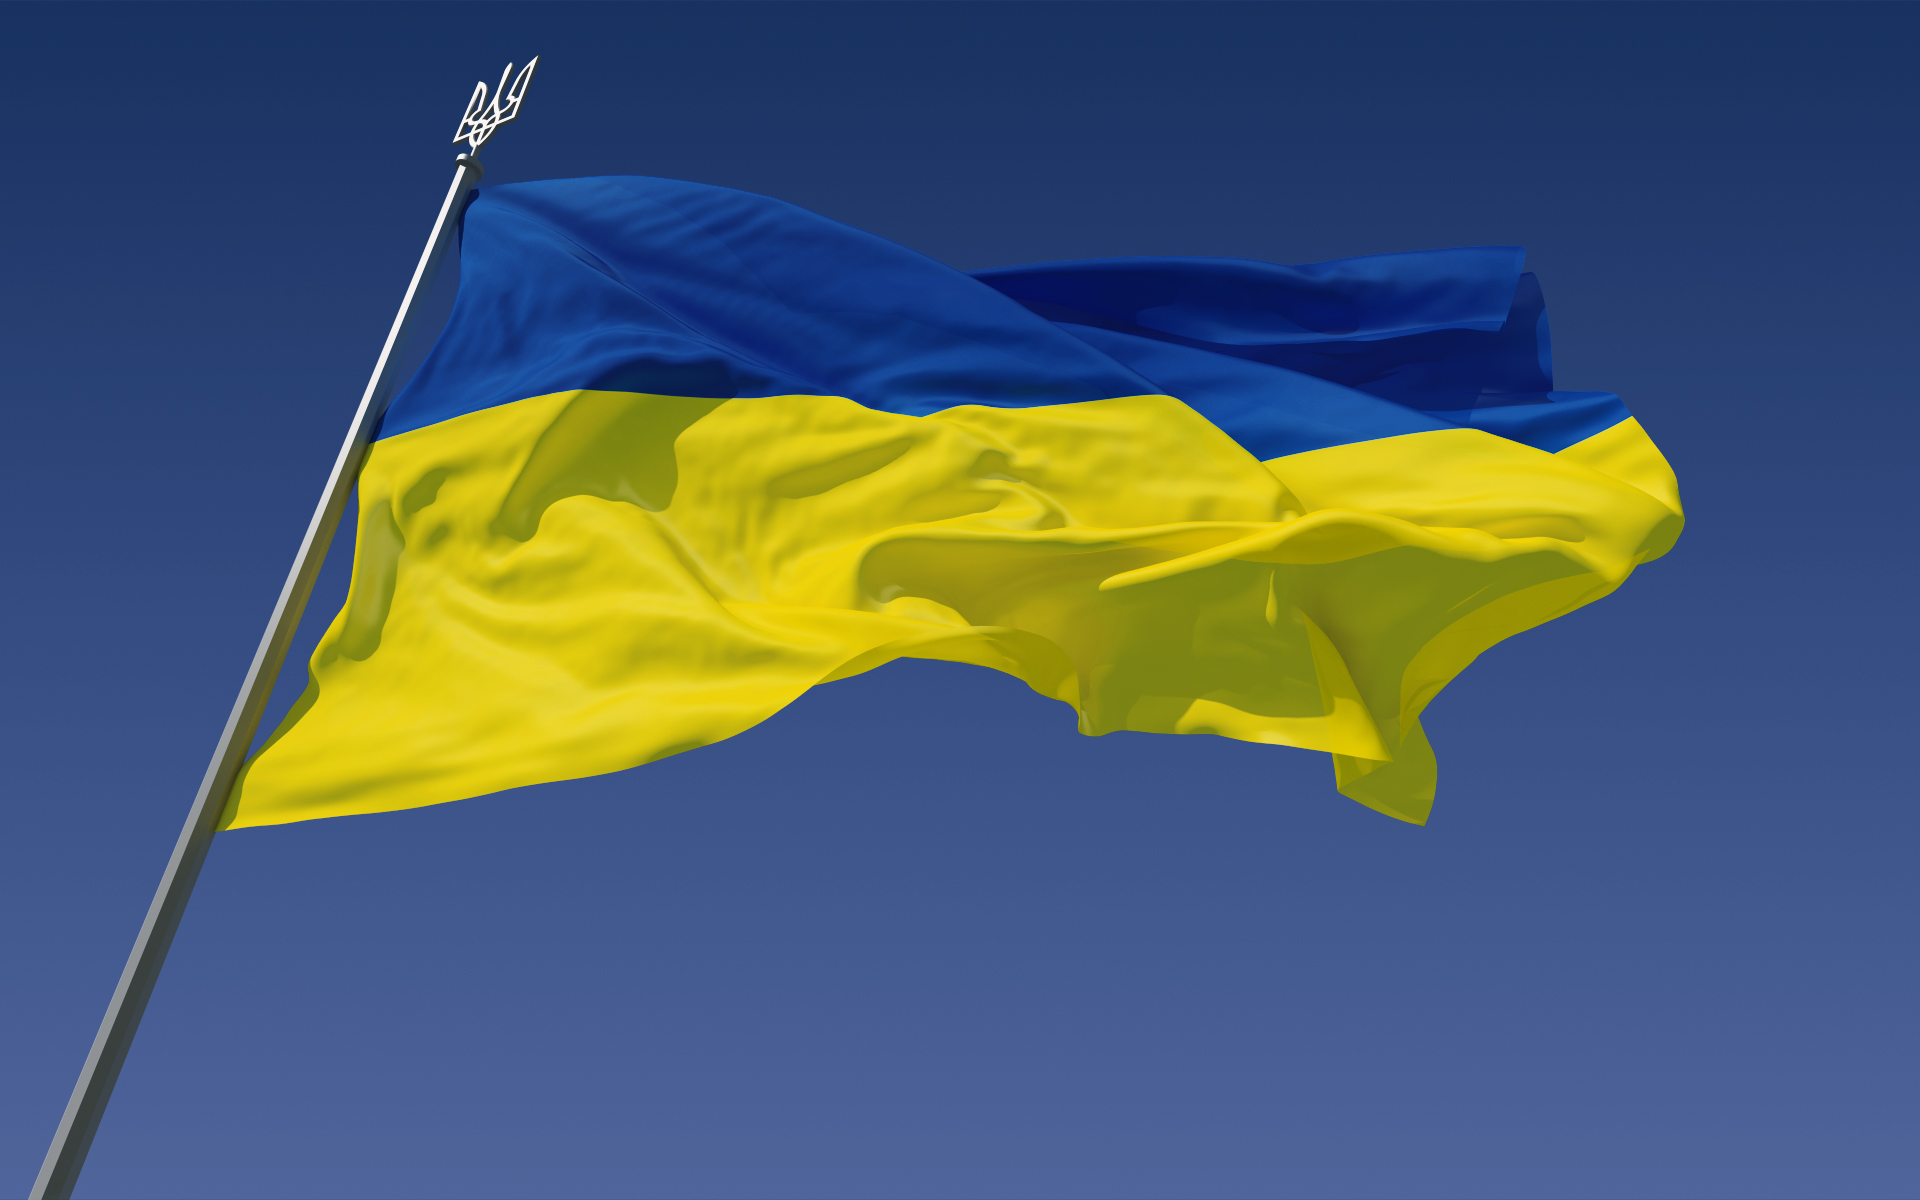 नेपालमा पर्वतारोहणका लागि रुसी नागरिकमाथि प्रतिबन्ध लगाउन युक्रेनको आग्रह